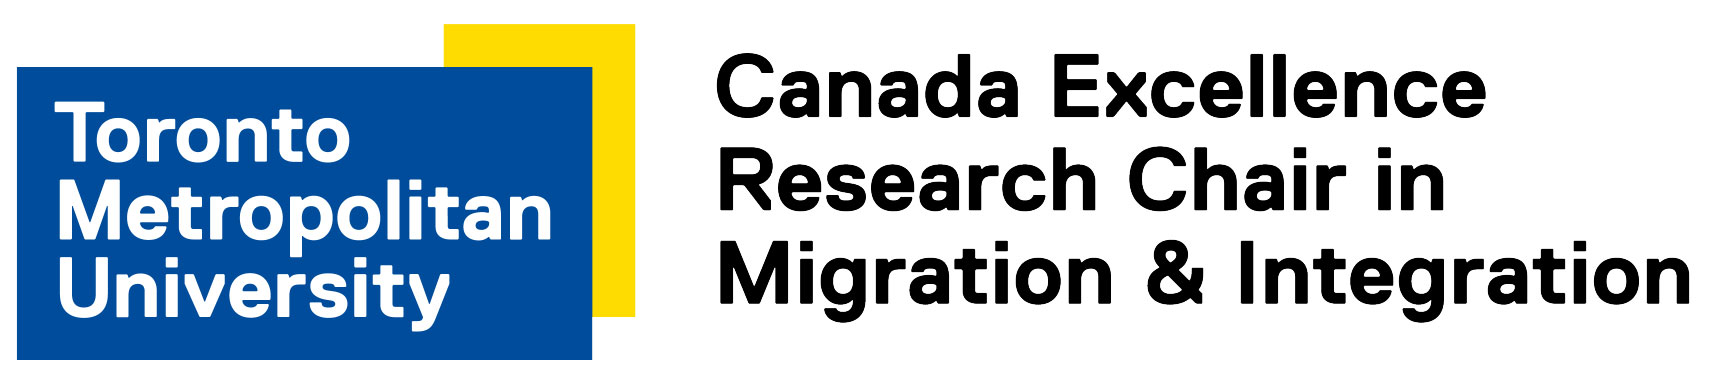 CERC Migration